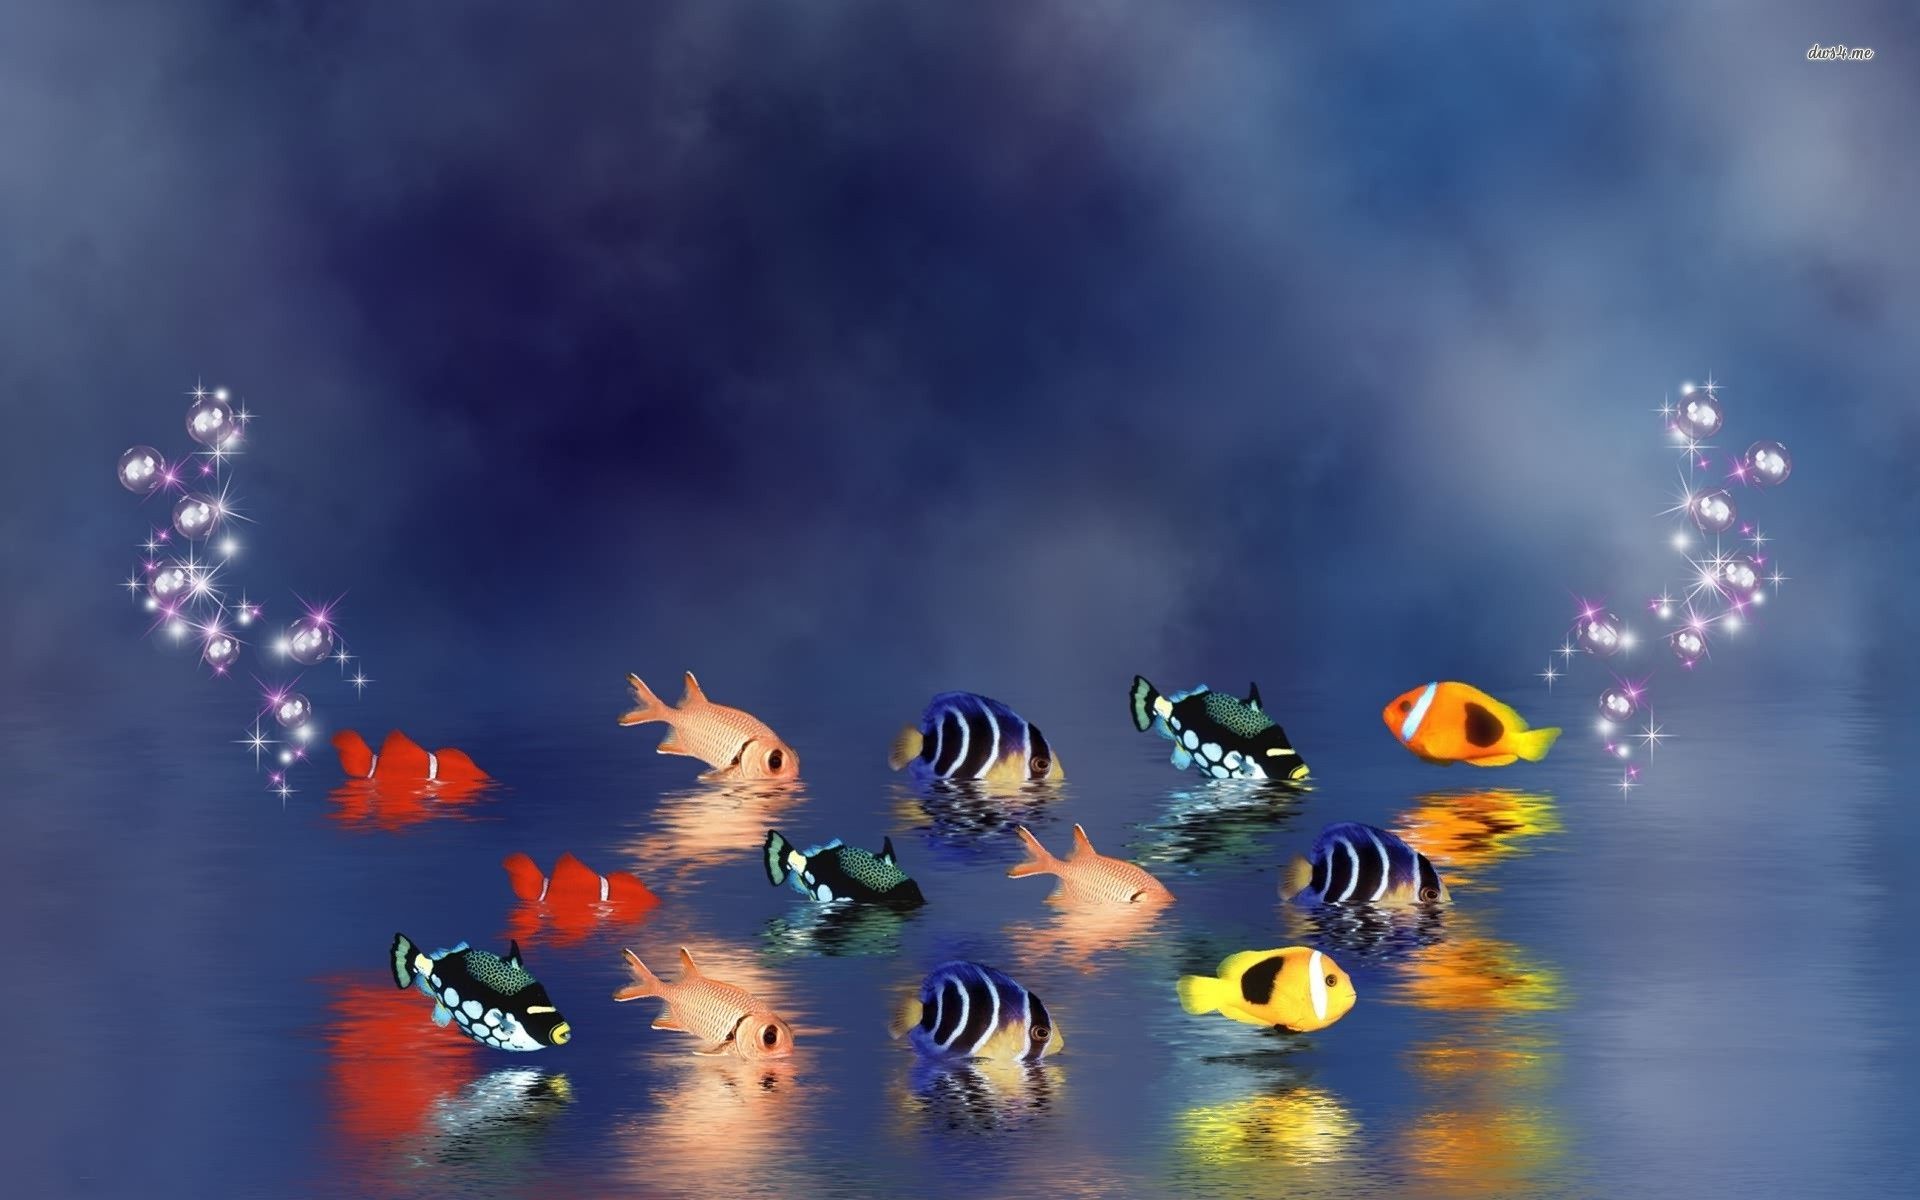 Tropical fish wallpaper - Digital Art wallpapers - #11605